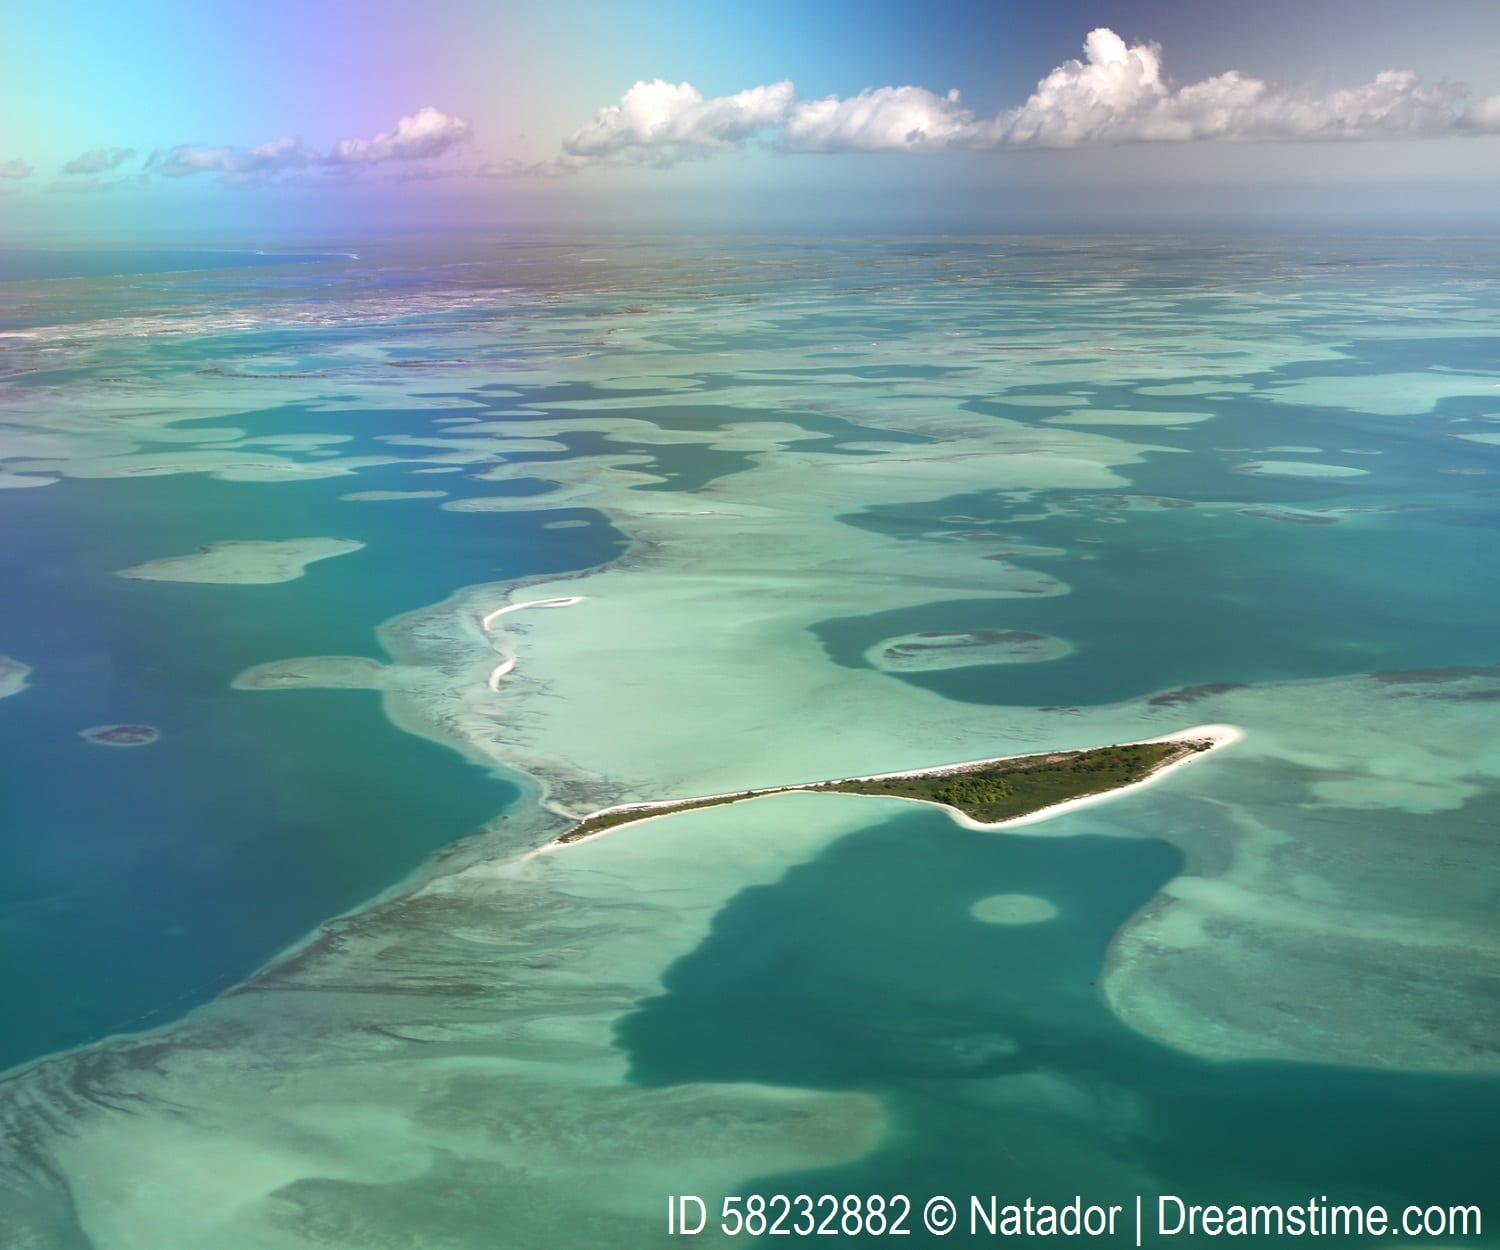 A lagoon in Kiribati.